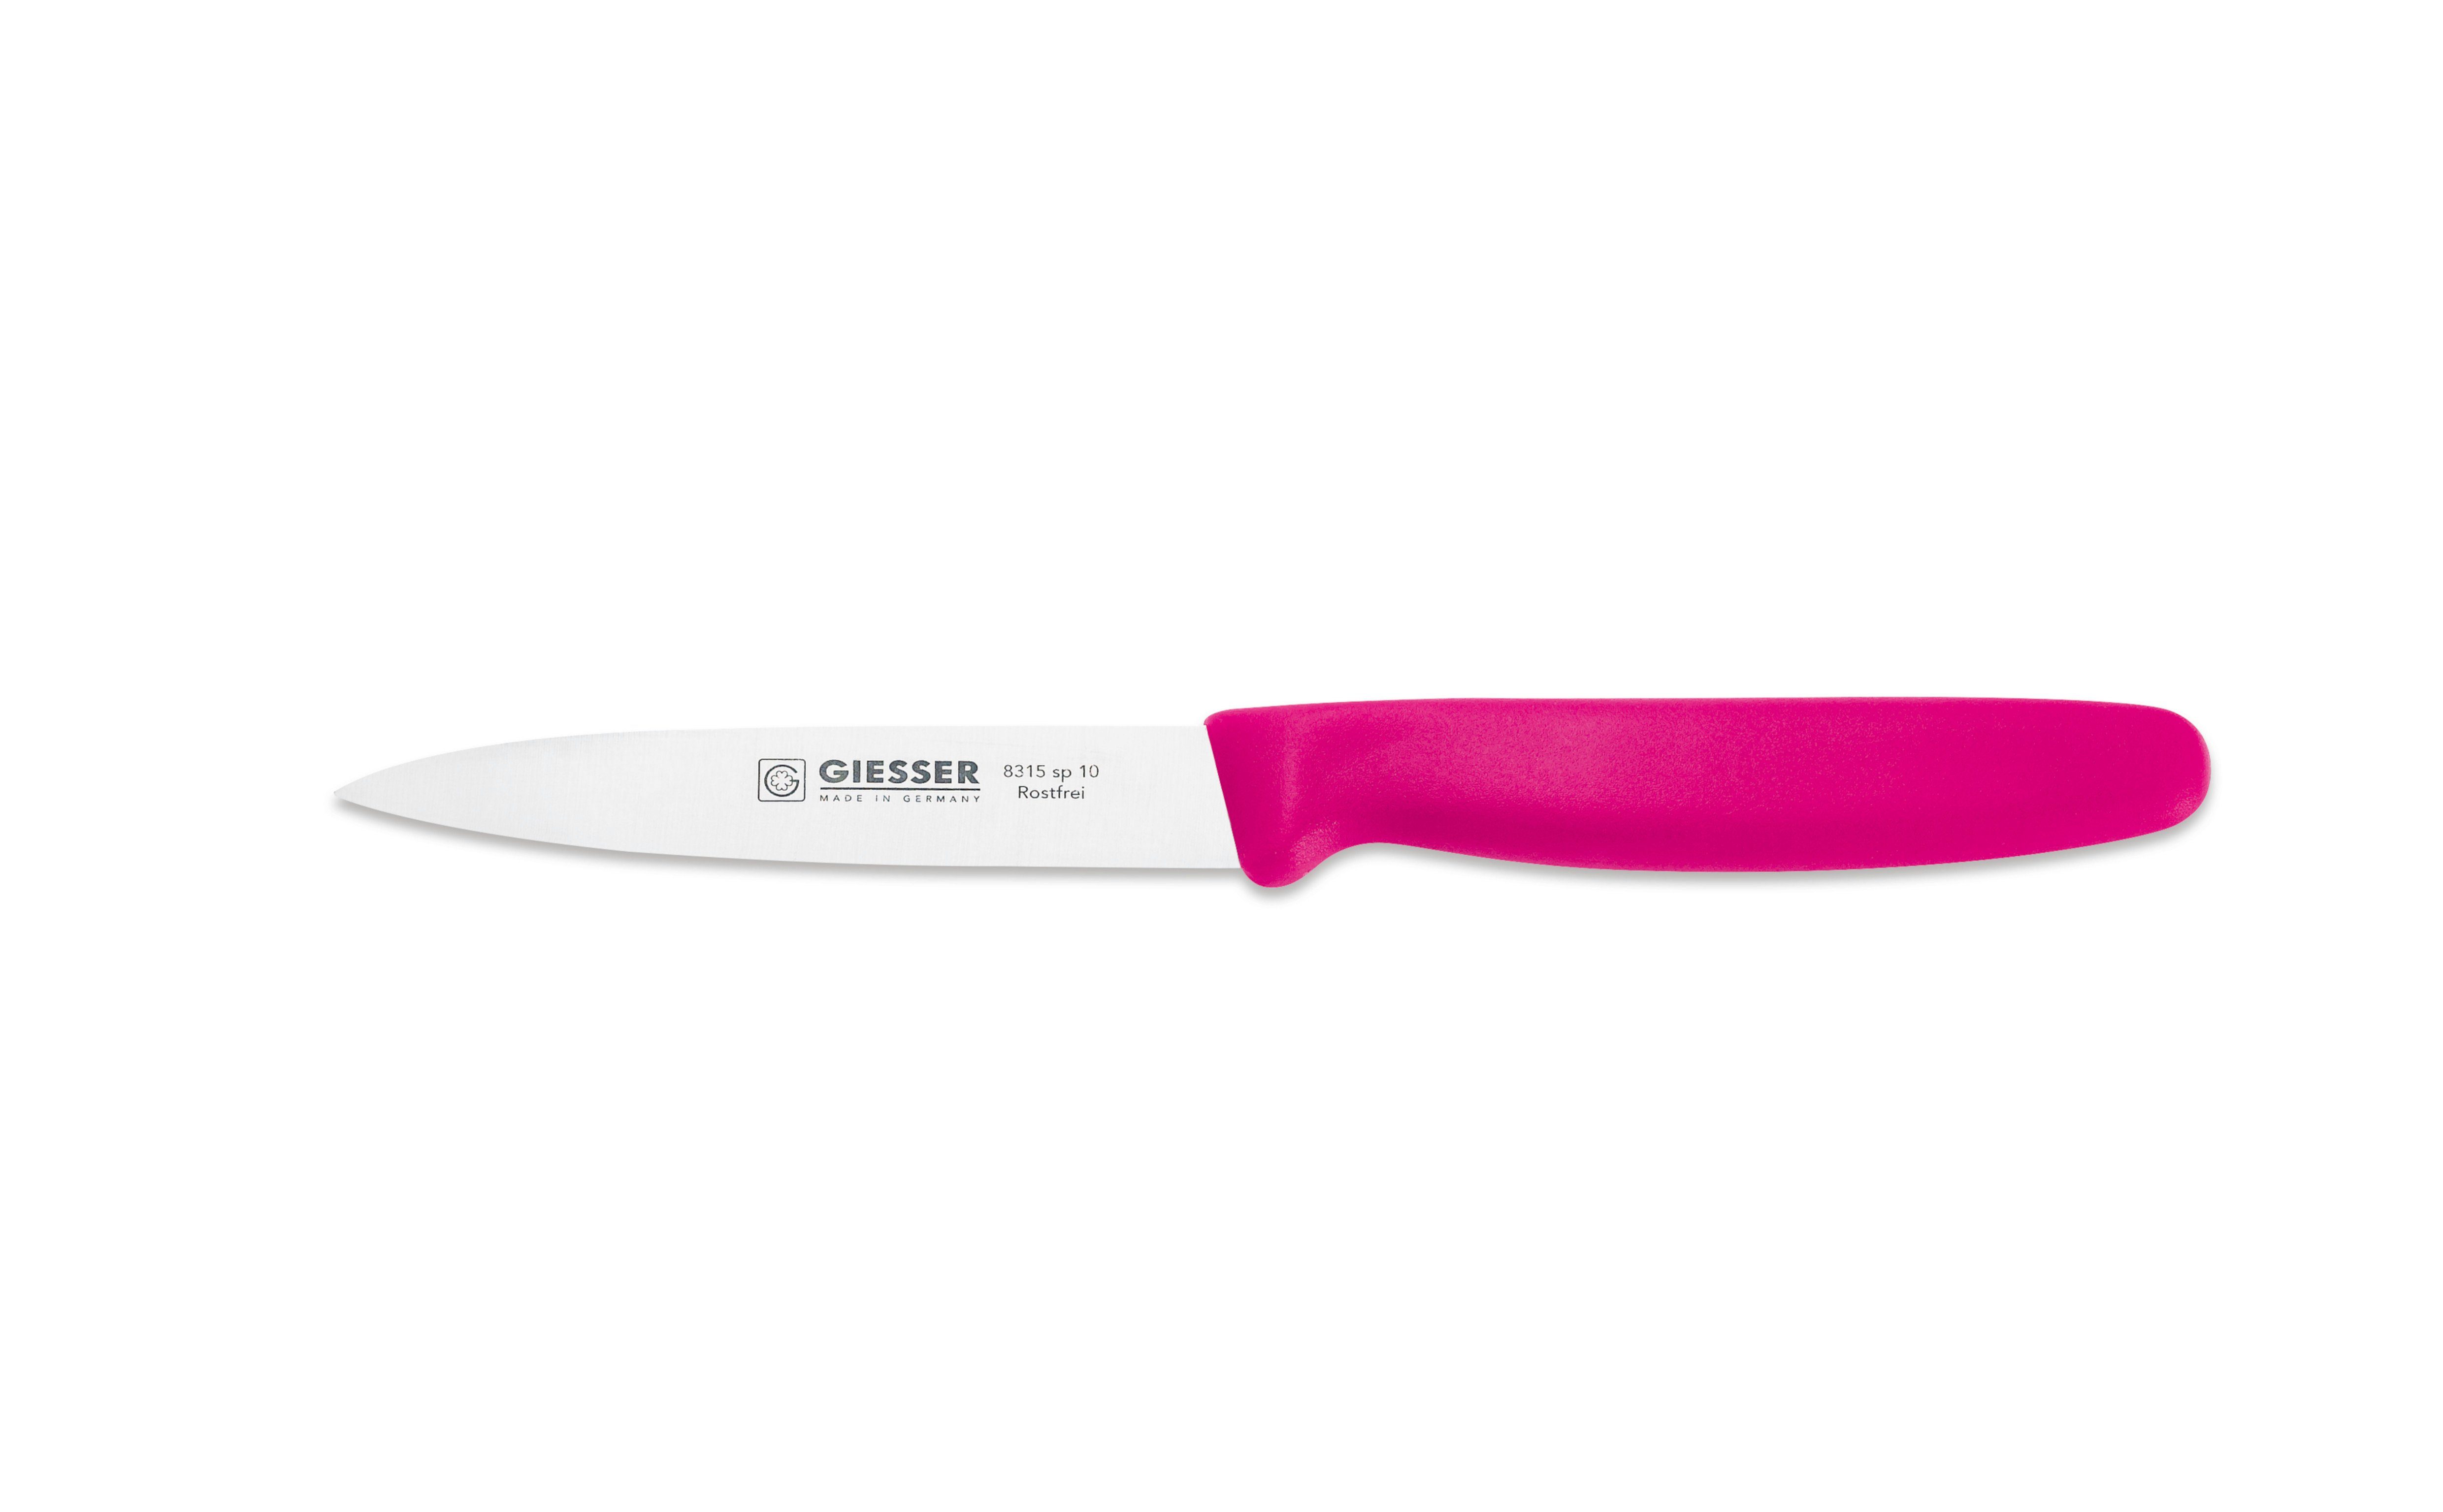 8/10/12, Pink Wellenschliff Küchenmesser 3mm Giesser mit 8315 oder Messer ohne Spickmesser Gemüsemesser sp